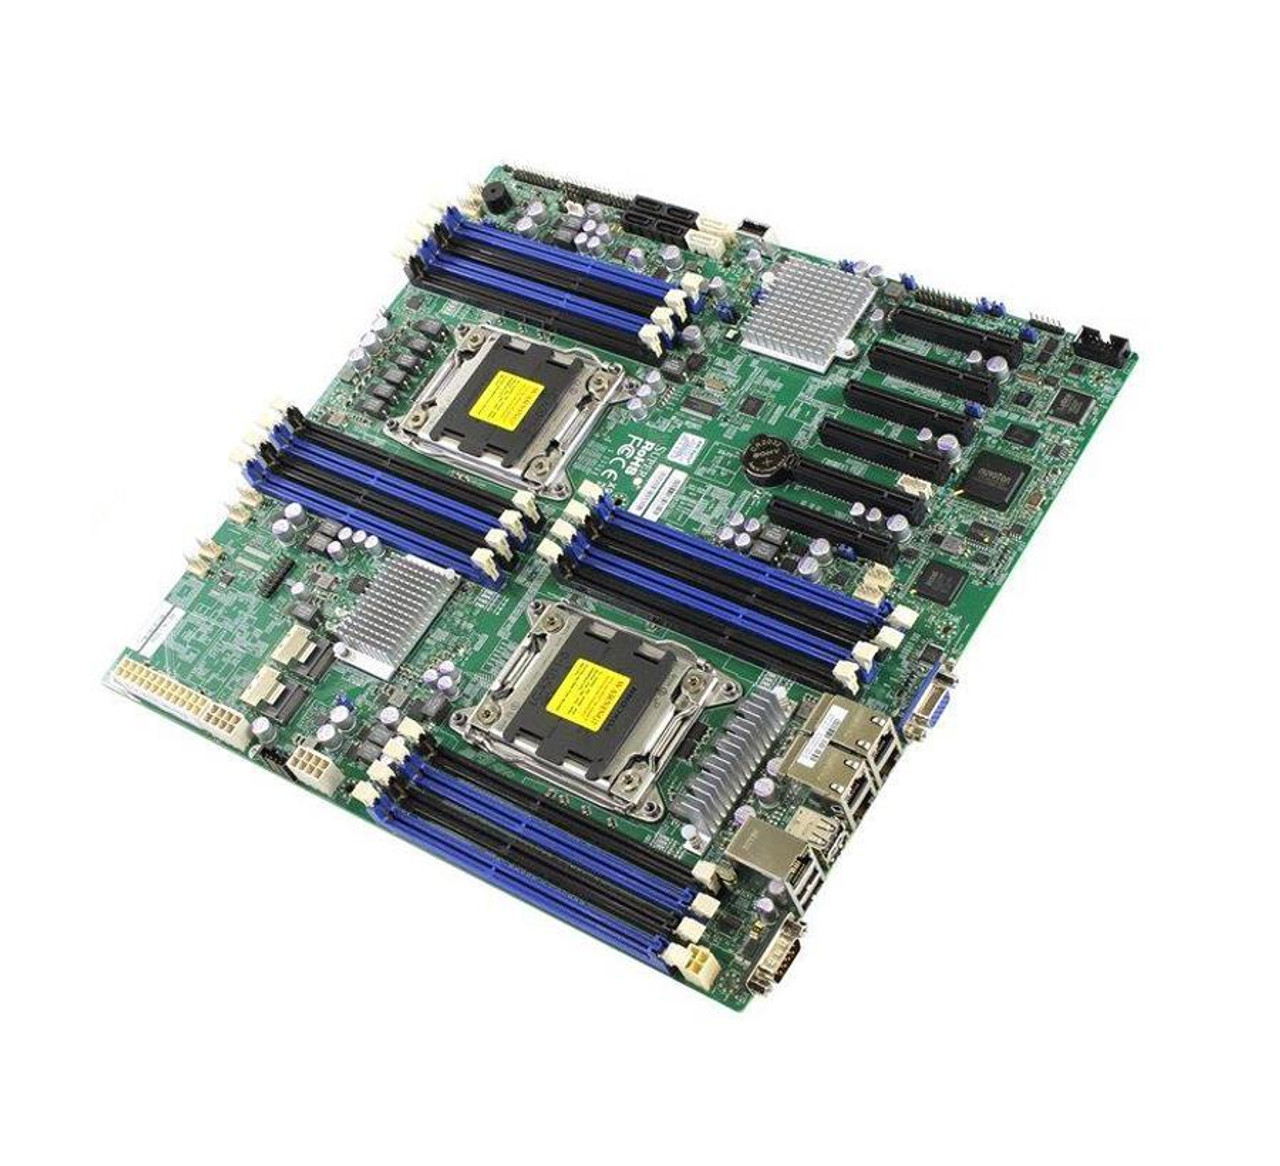 SuperMicro X9DRD-7LN4F-JBOD Socket LGA 2011 Intel C602J Chipset Intel Xeon E5-2600/ E5-2600 v2 Series Processors Support DDR3 16x DIMM 4x SATA2 3.0Gb/s E-ATX Server Motherboard  Mfr P/N MBD-X9DRD-7LN4F-JBOD-B